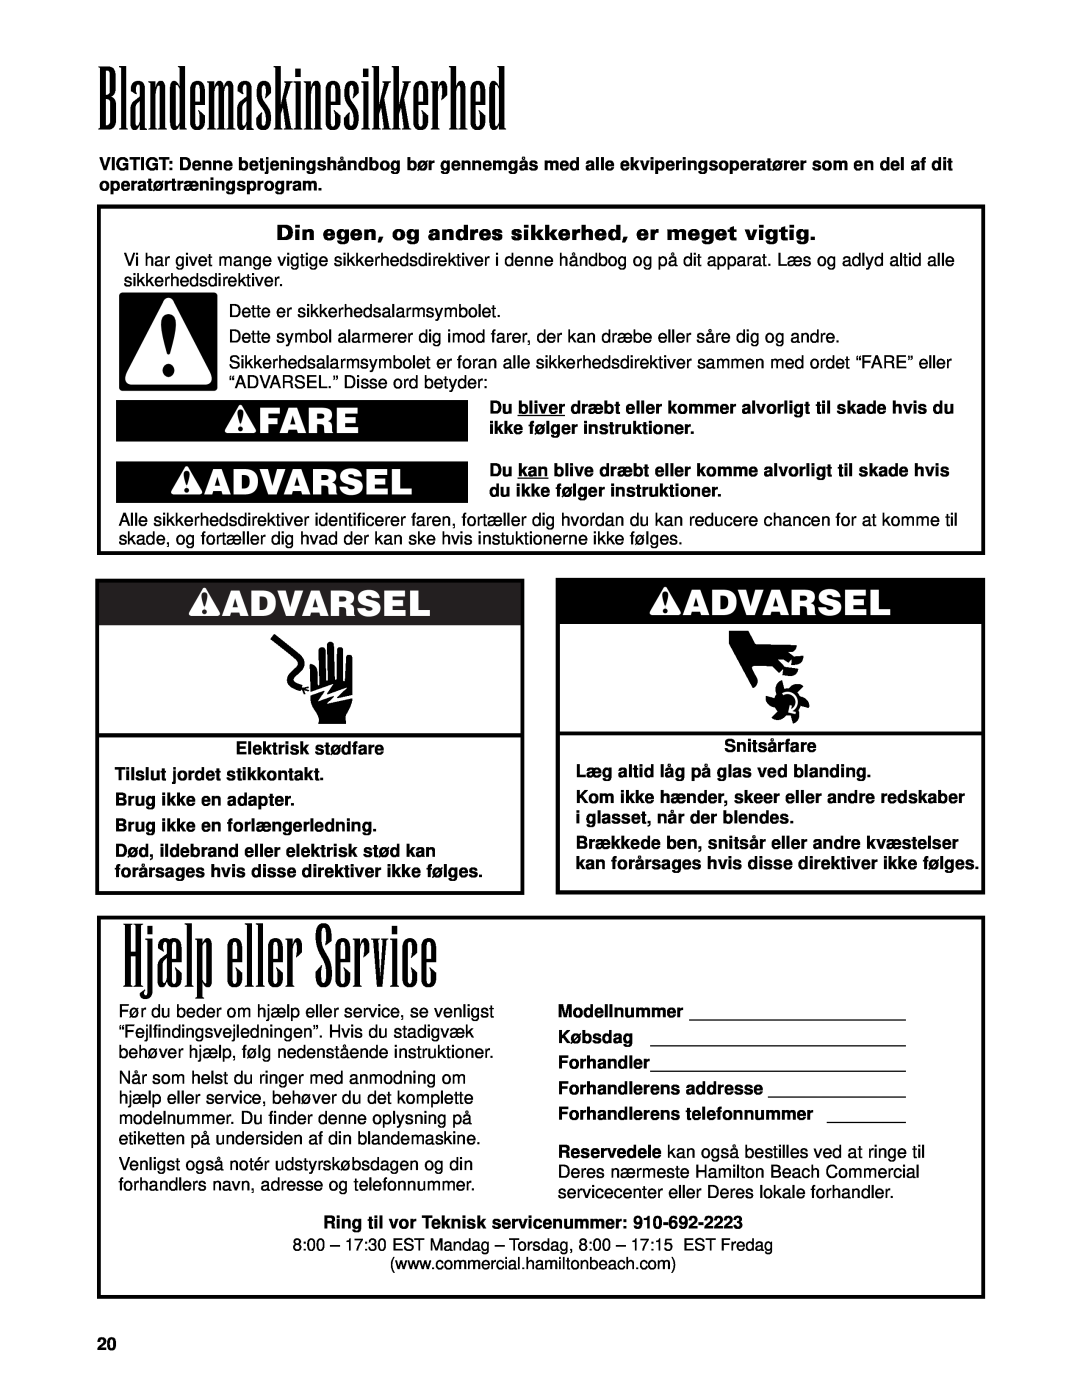 Hamilton Beach Bar Blender operation manual Blandemaskinesikkerhed, Hjælp eller Service, wFARE wADVARSEL 